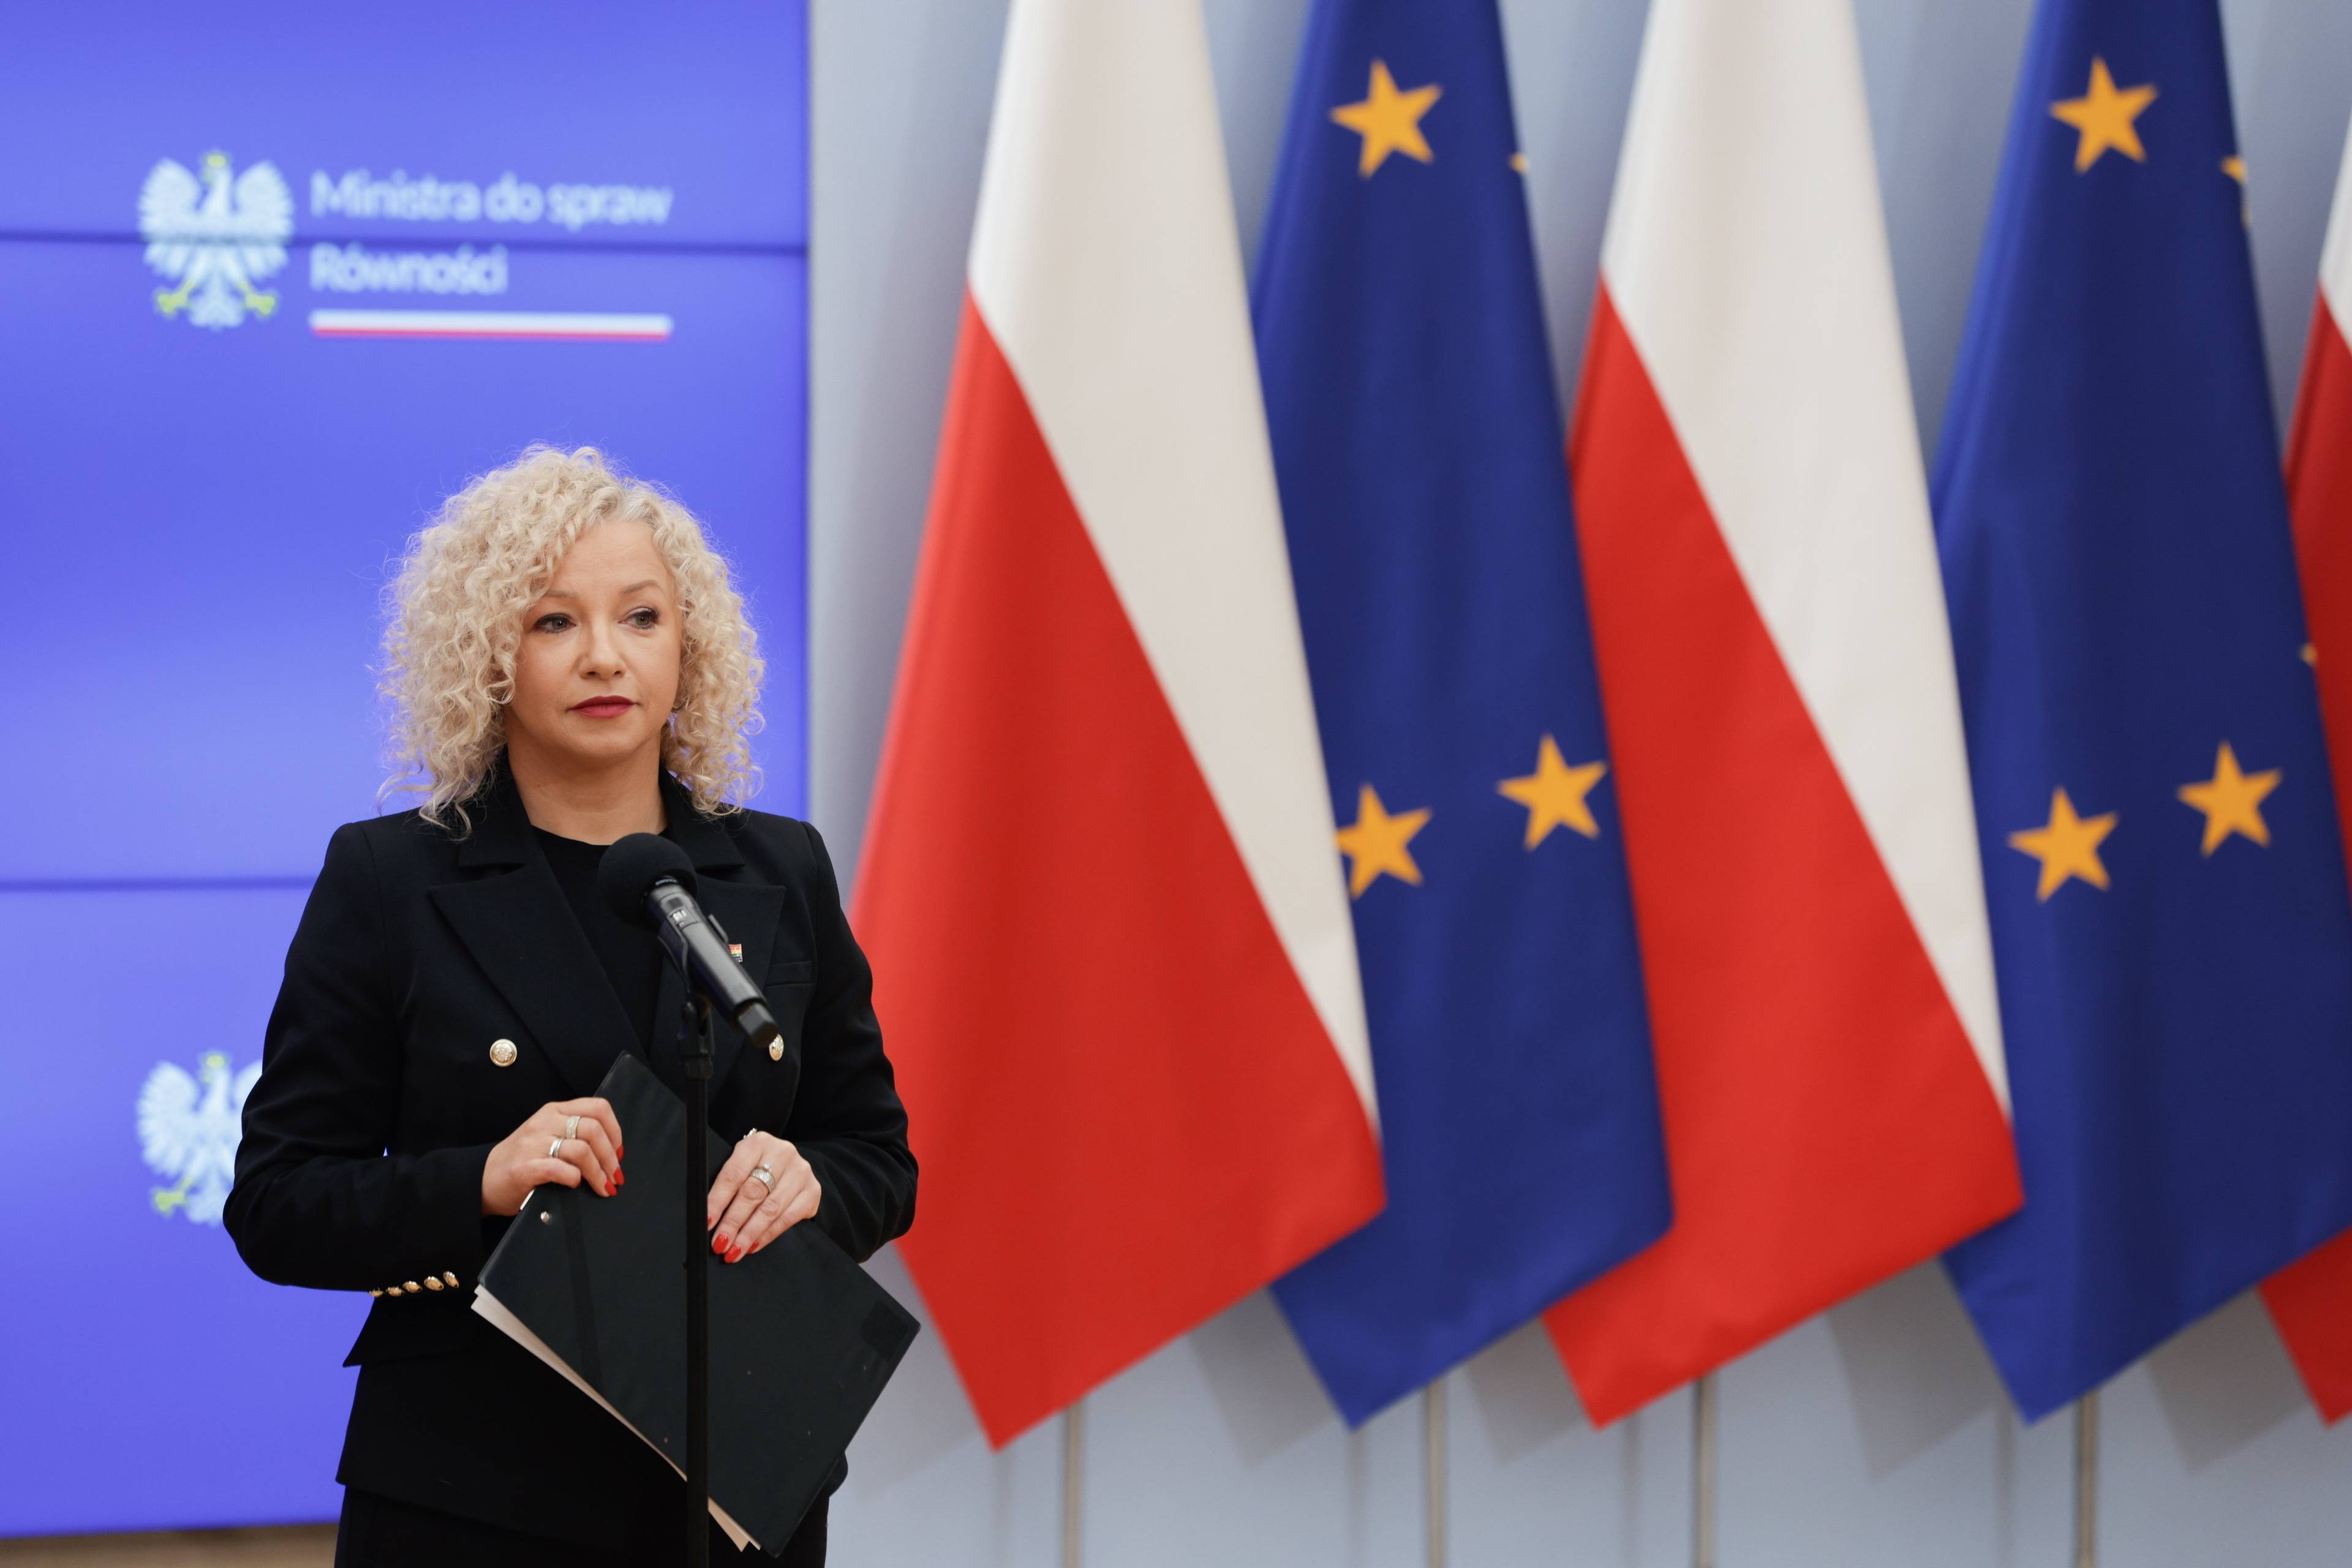 Kobieta w ciemnym żakiecie stoi na tle flag UE i Polski